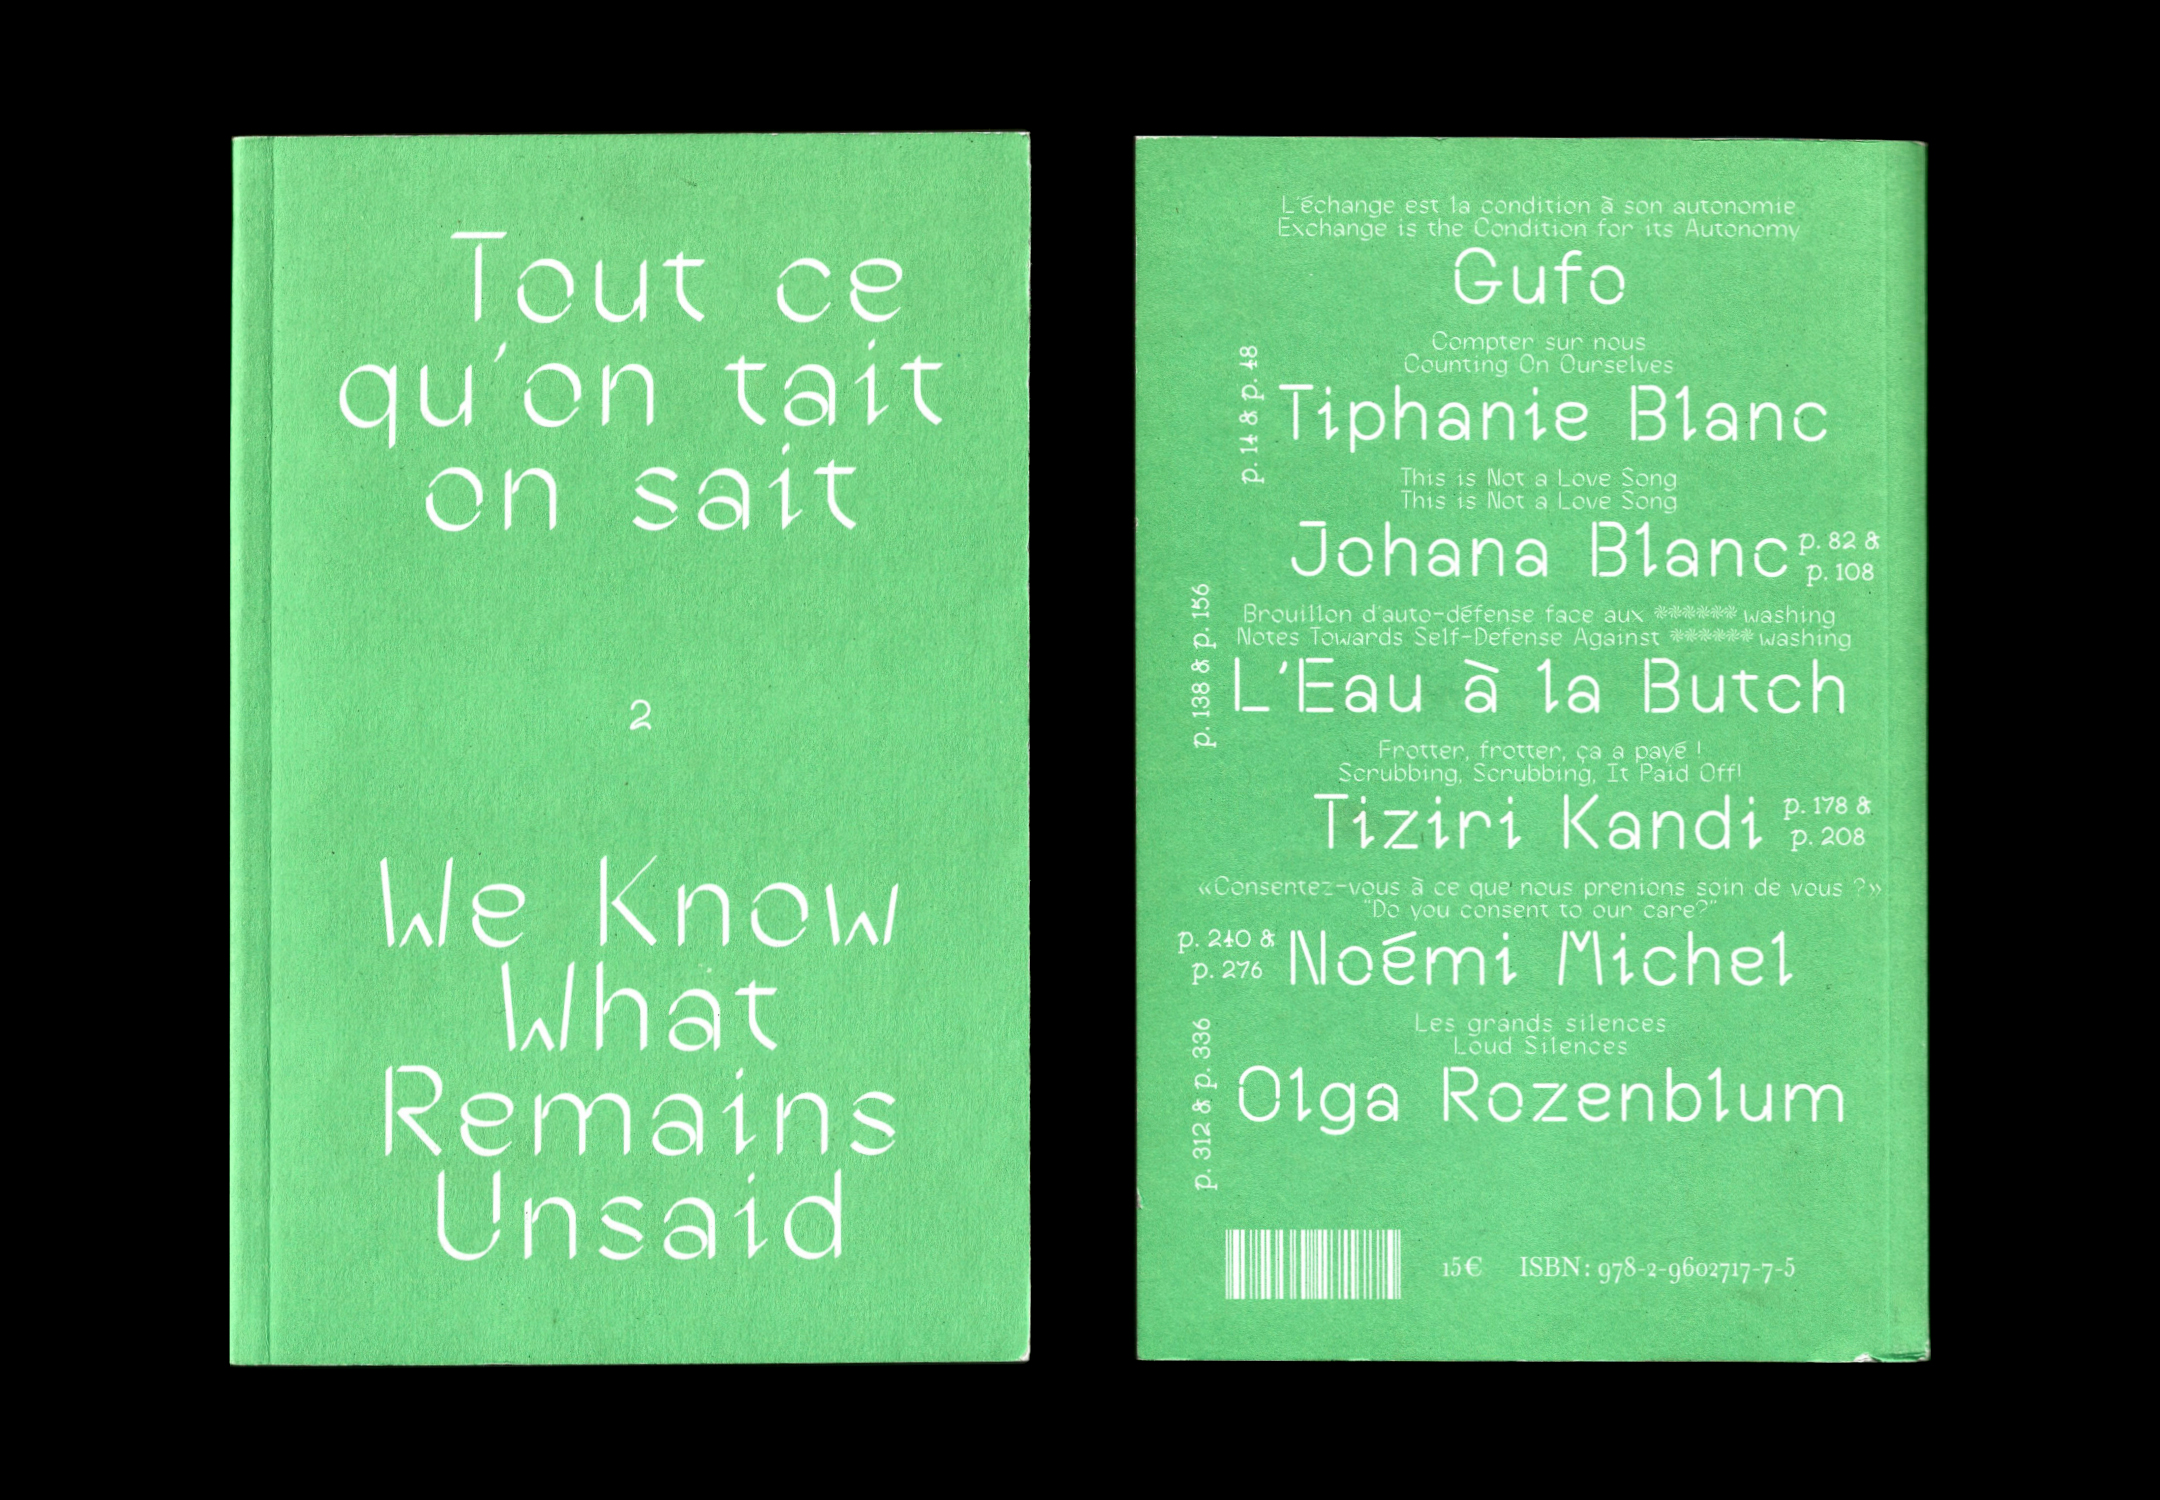 Couverture et quatrième de couverture du livre, qui est vert fluo. Le texte est en blanc et la quatrième fait office de sommaire.